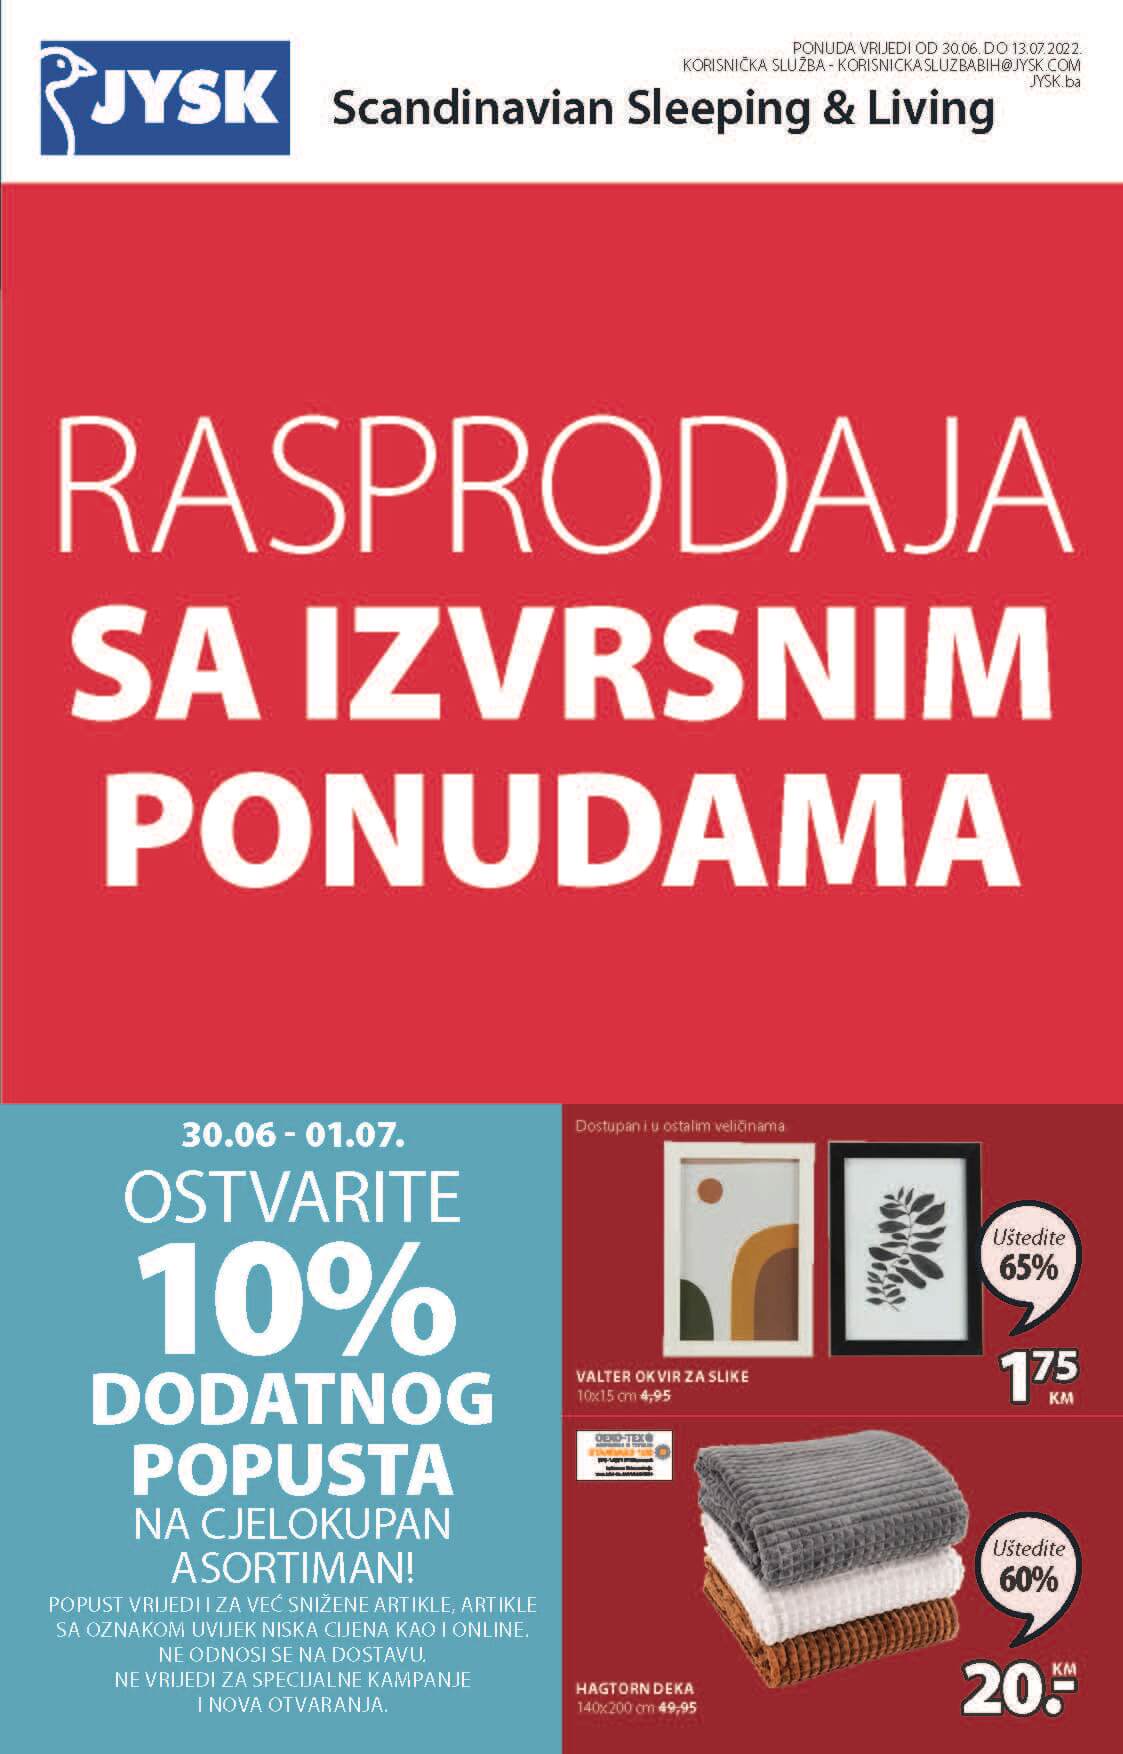 JYSK katalog BiH JUL 2022 RASPRODAJA sa izvrsnim ponudama od 5.7. do 13.7.2022. Page 02